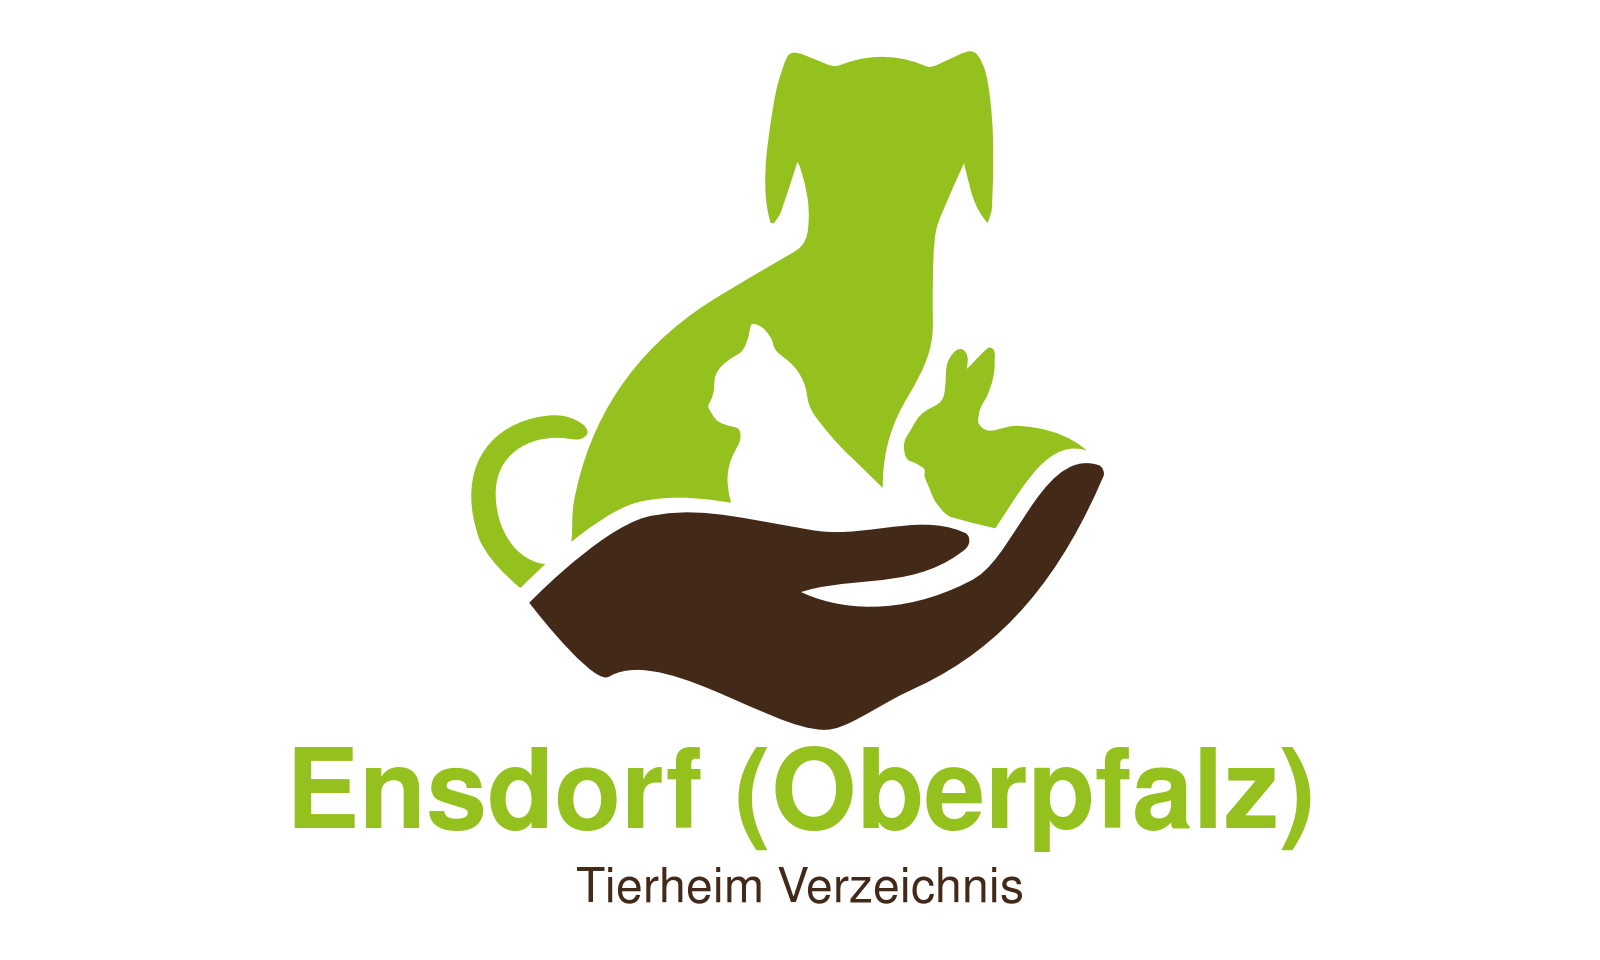 Tierheim Ensdorf (Oberpfalz)